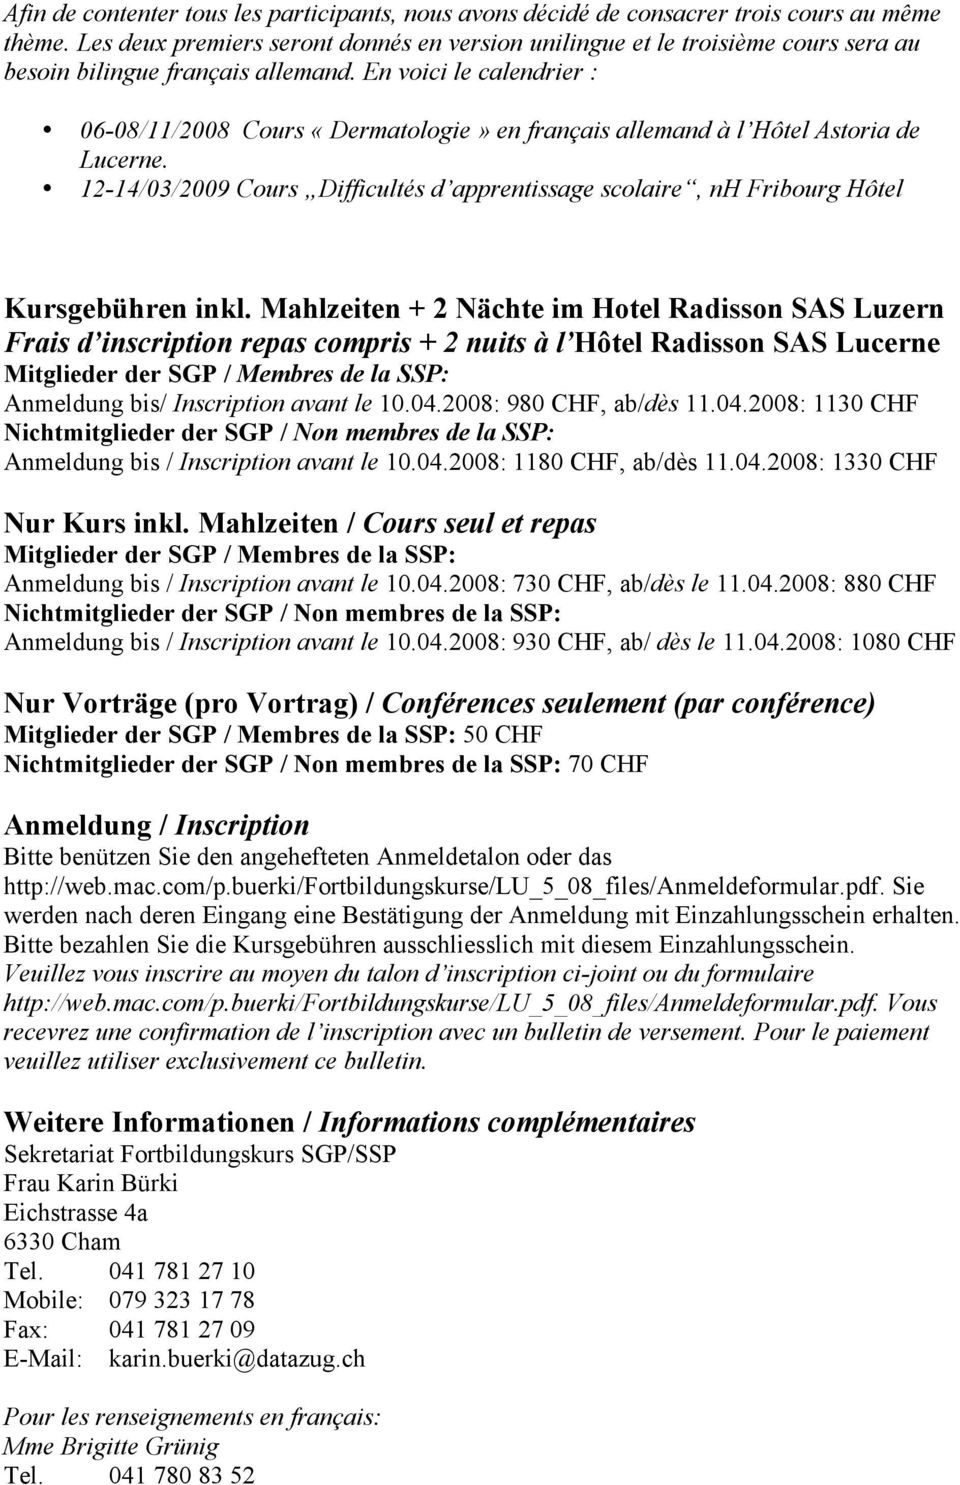 En voici le calendrier : 06-08/11/2008 Cours «Dermatologie» en français allemand à l Hôtel Astoria de Lucerne.